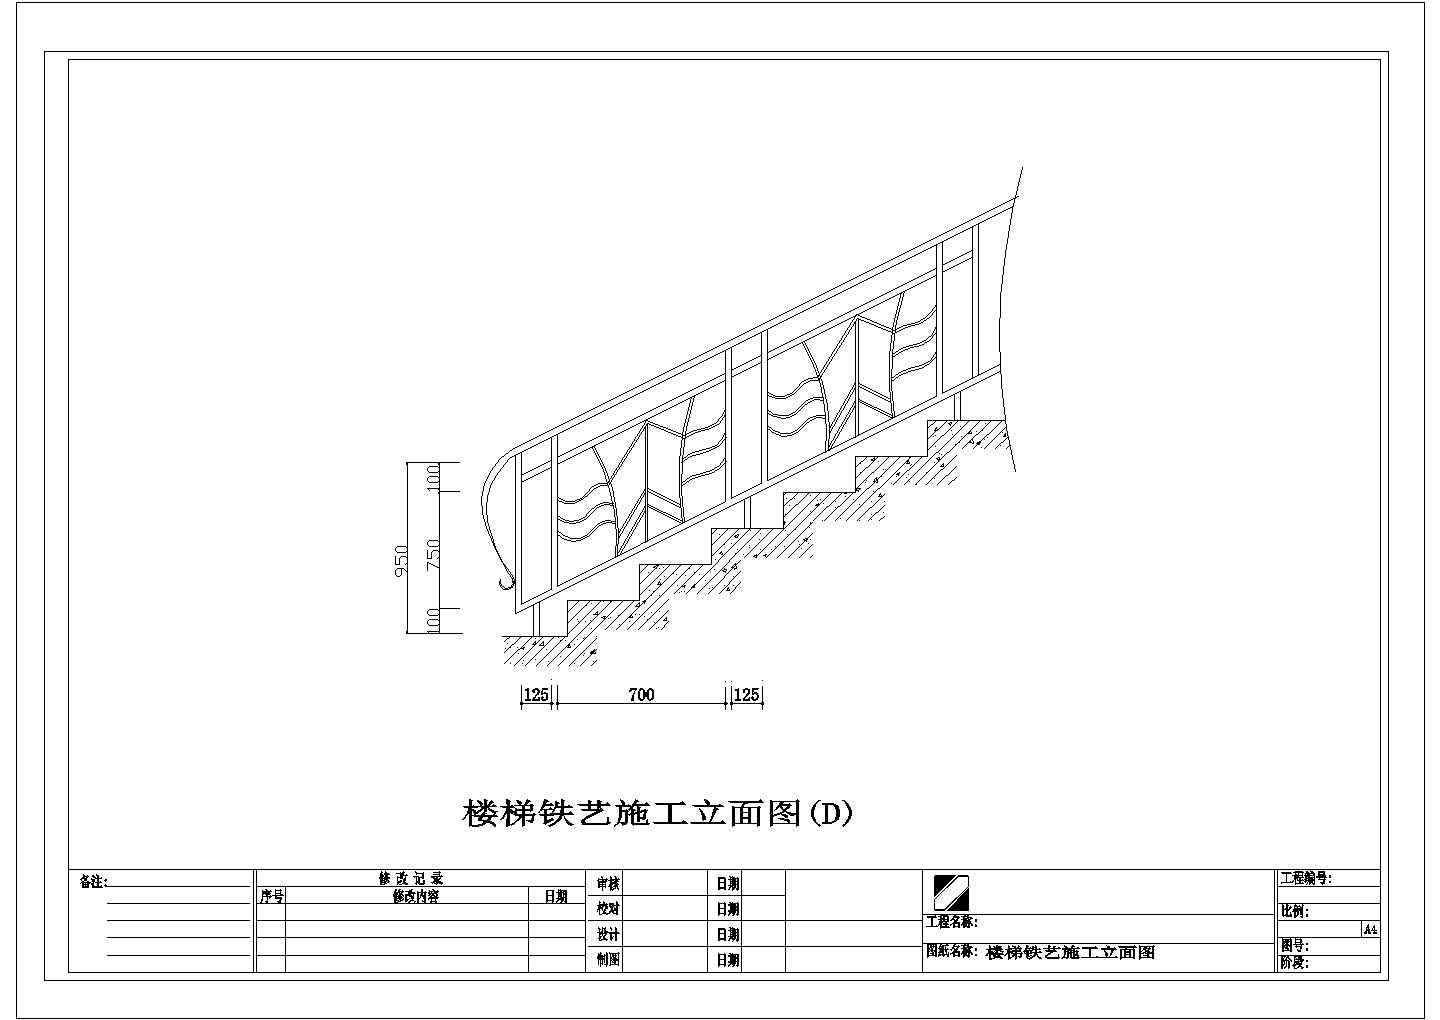 多套楼梯设计参考布置图